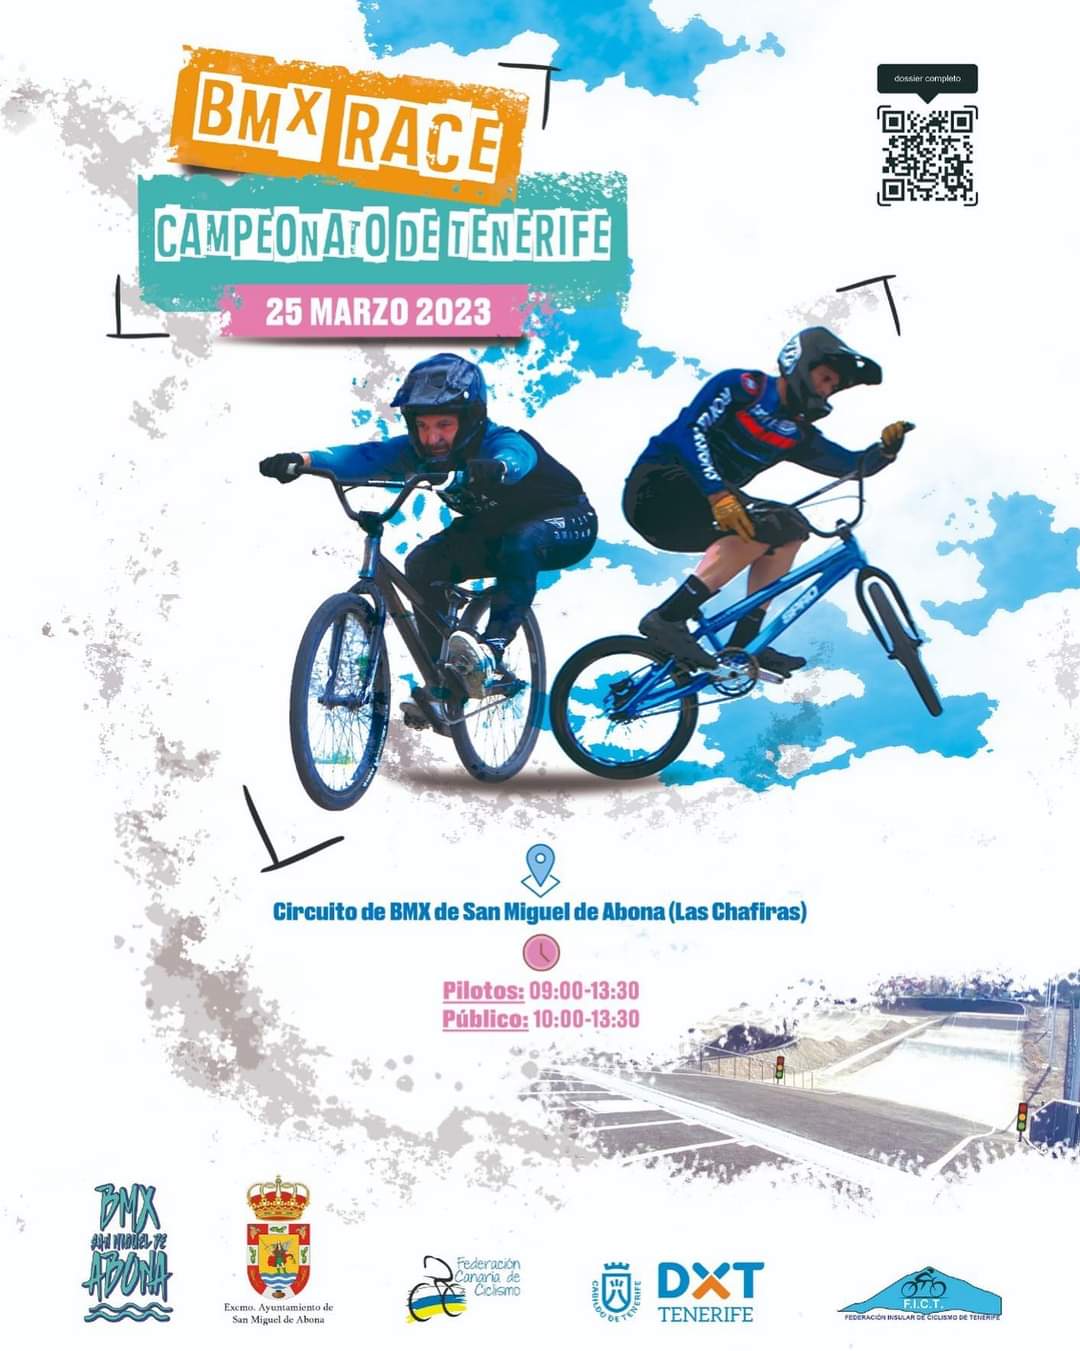 BMX RACE, Campeonato de Tenerife